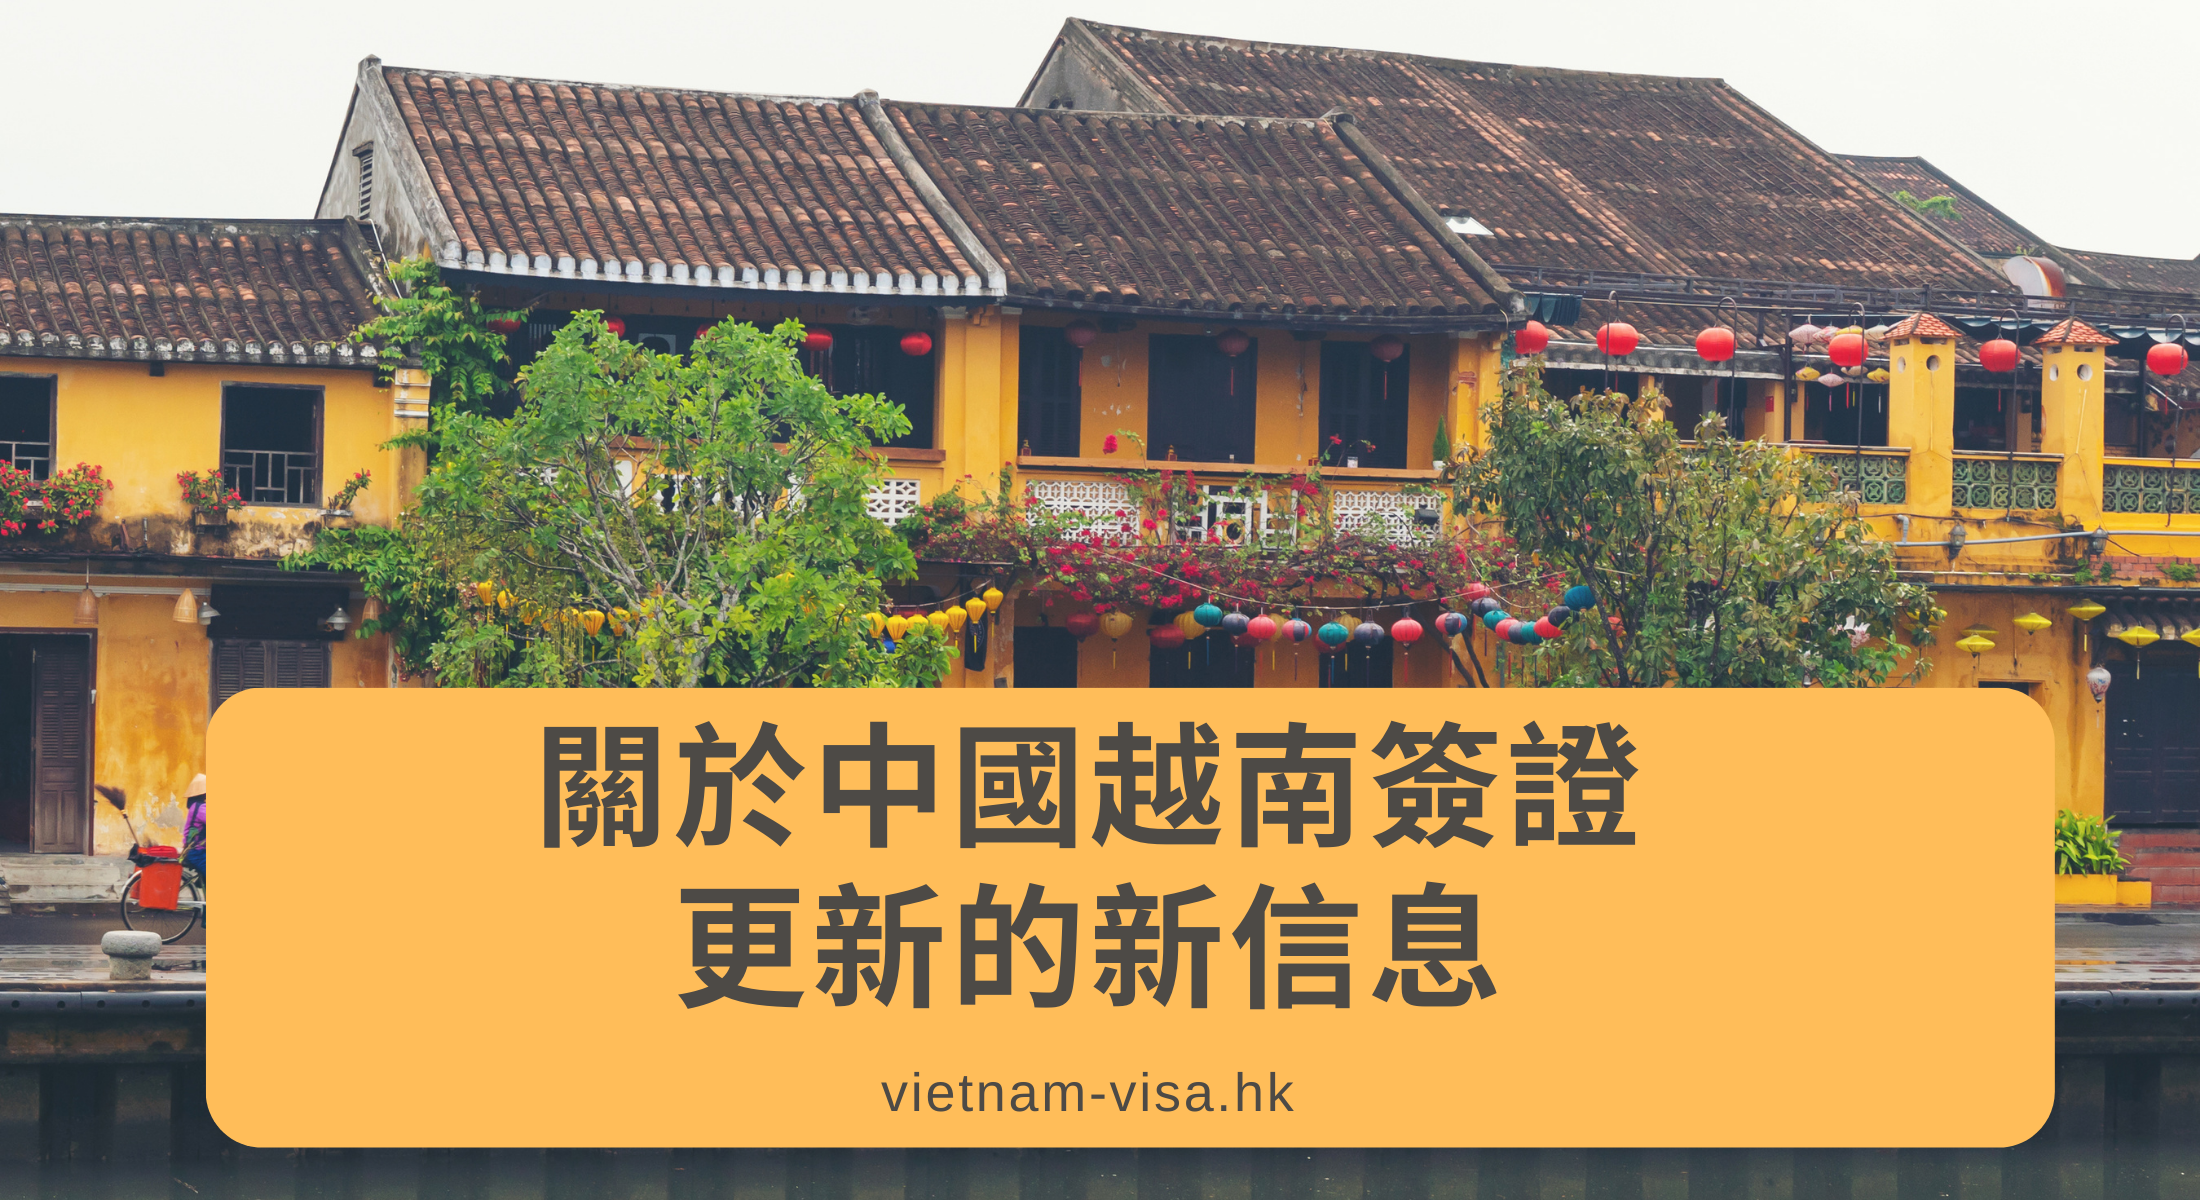 關於中國人越南簽證更新的新信息